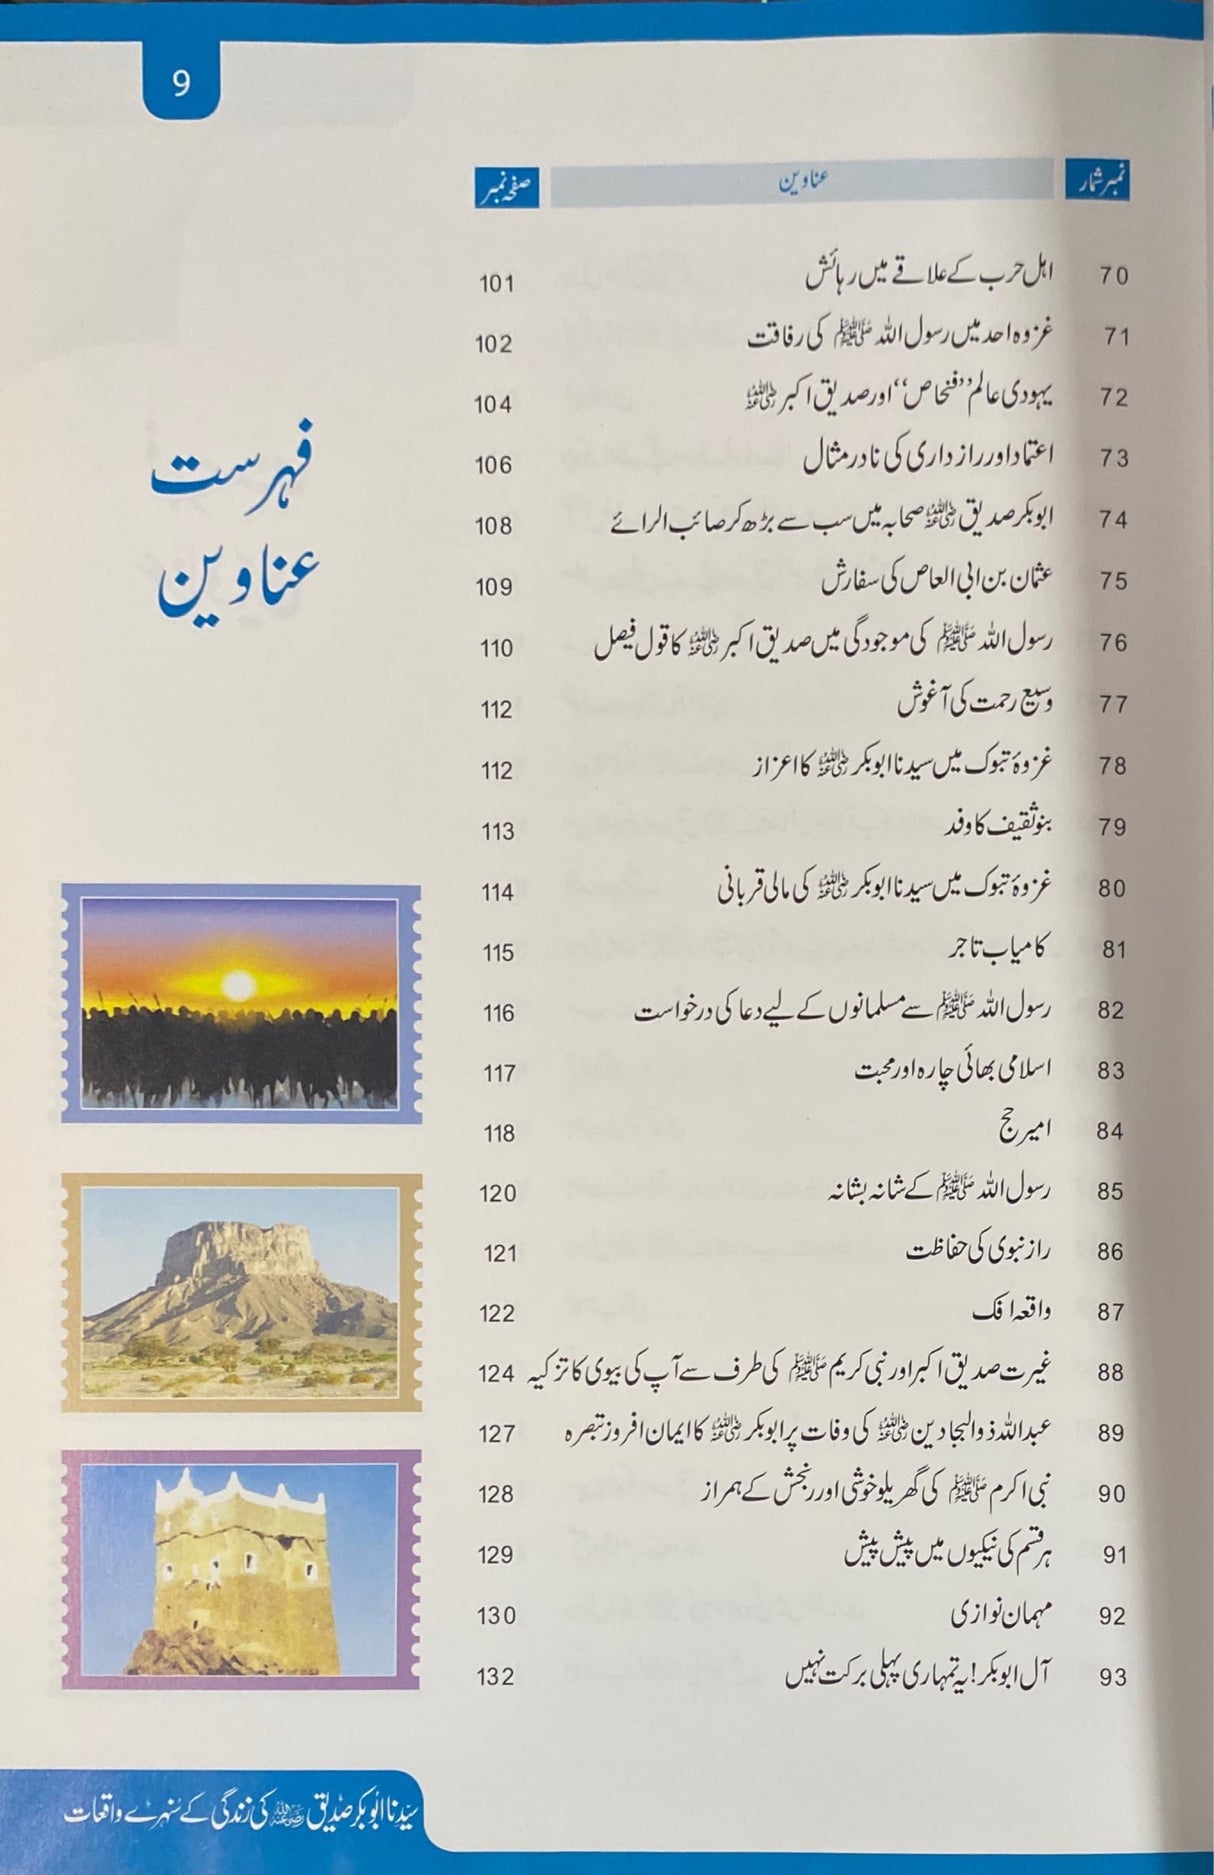 Urdu Sayidina Abu Bakr Sunehri Waqiyat